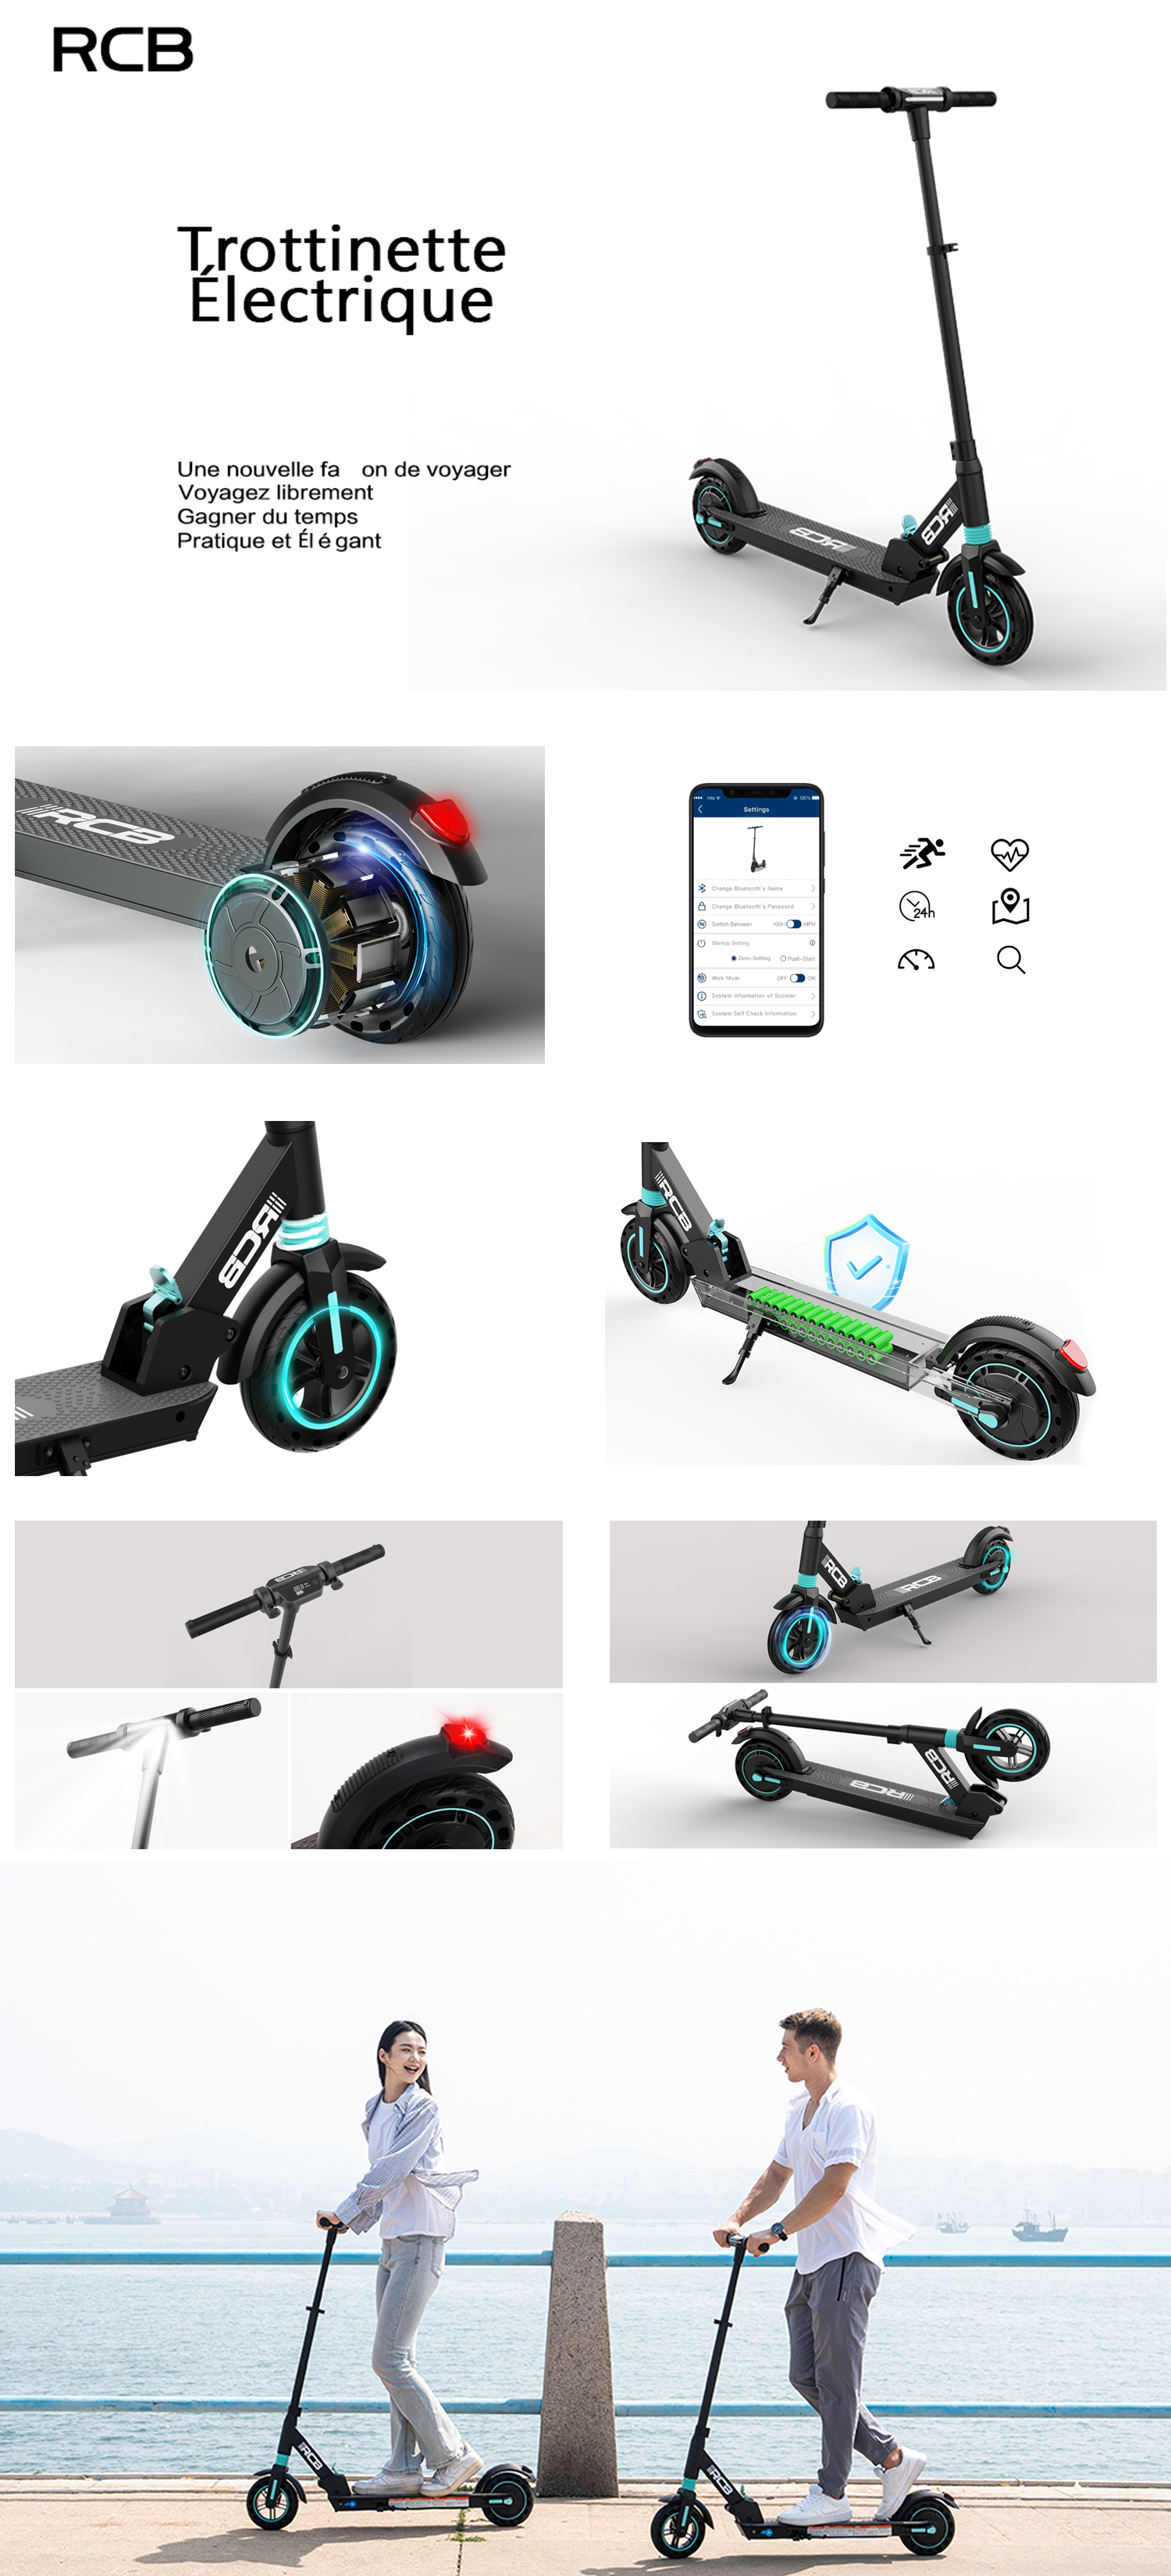 rcb trottinette electrique, scooter électrique ultra portable avec app et  la puissance max 350 w, mode 3 vitesses, écran lcd, régulateur de vitesse,  méthode de pliage innovante, trottinette électrique pour adulte et